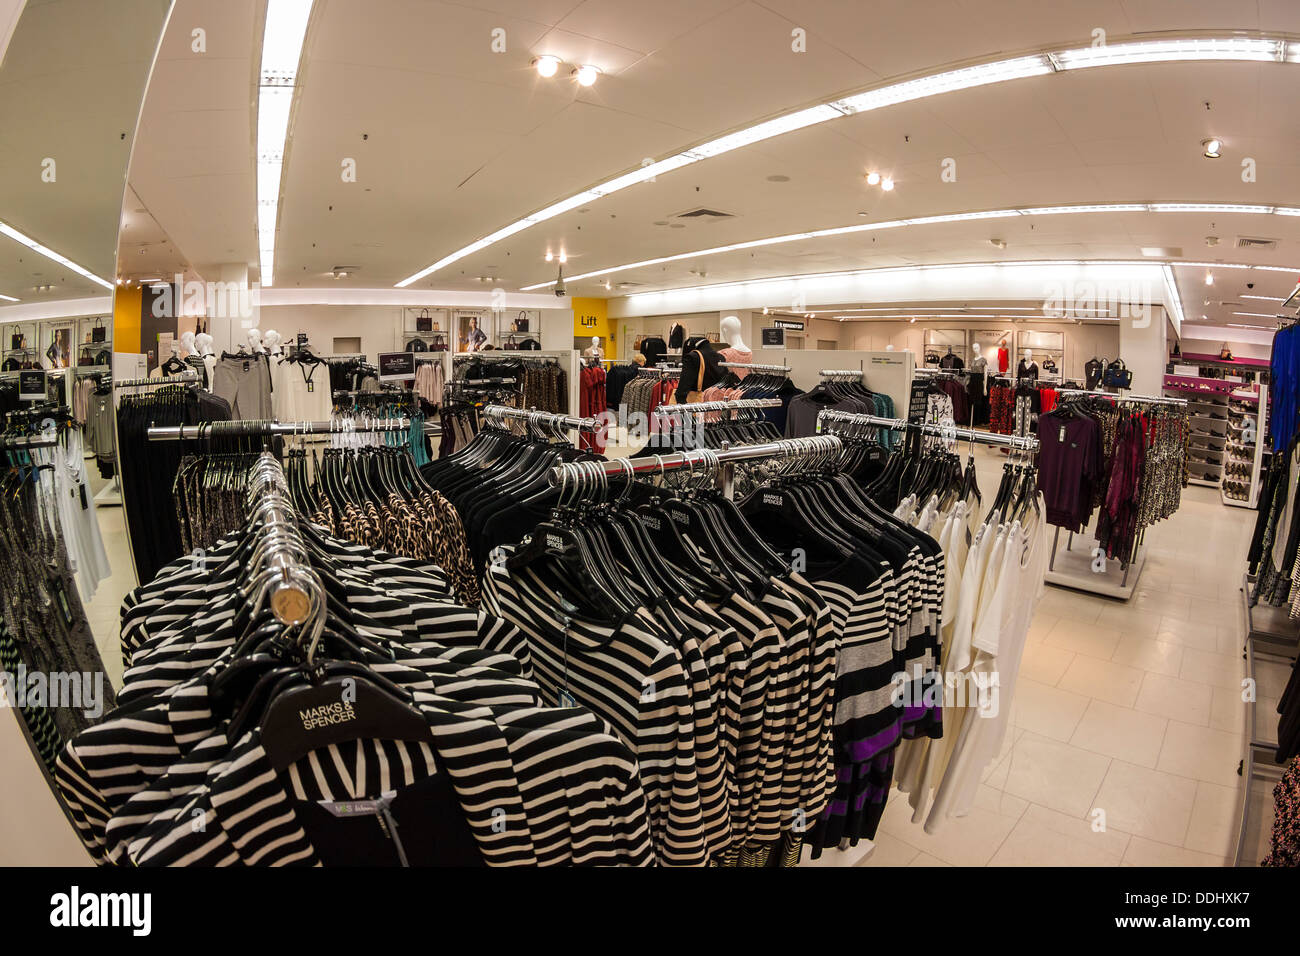 Ladies' Fashion Department, retail store Stock Photo - Alamy